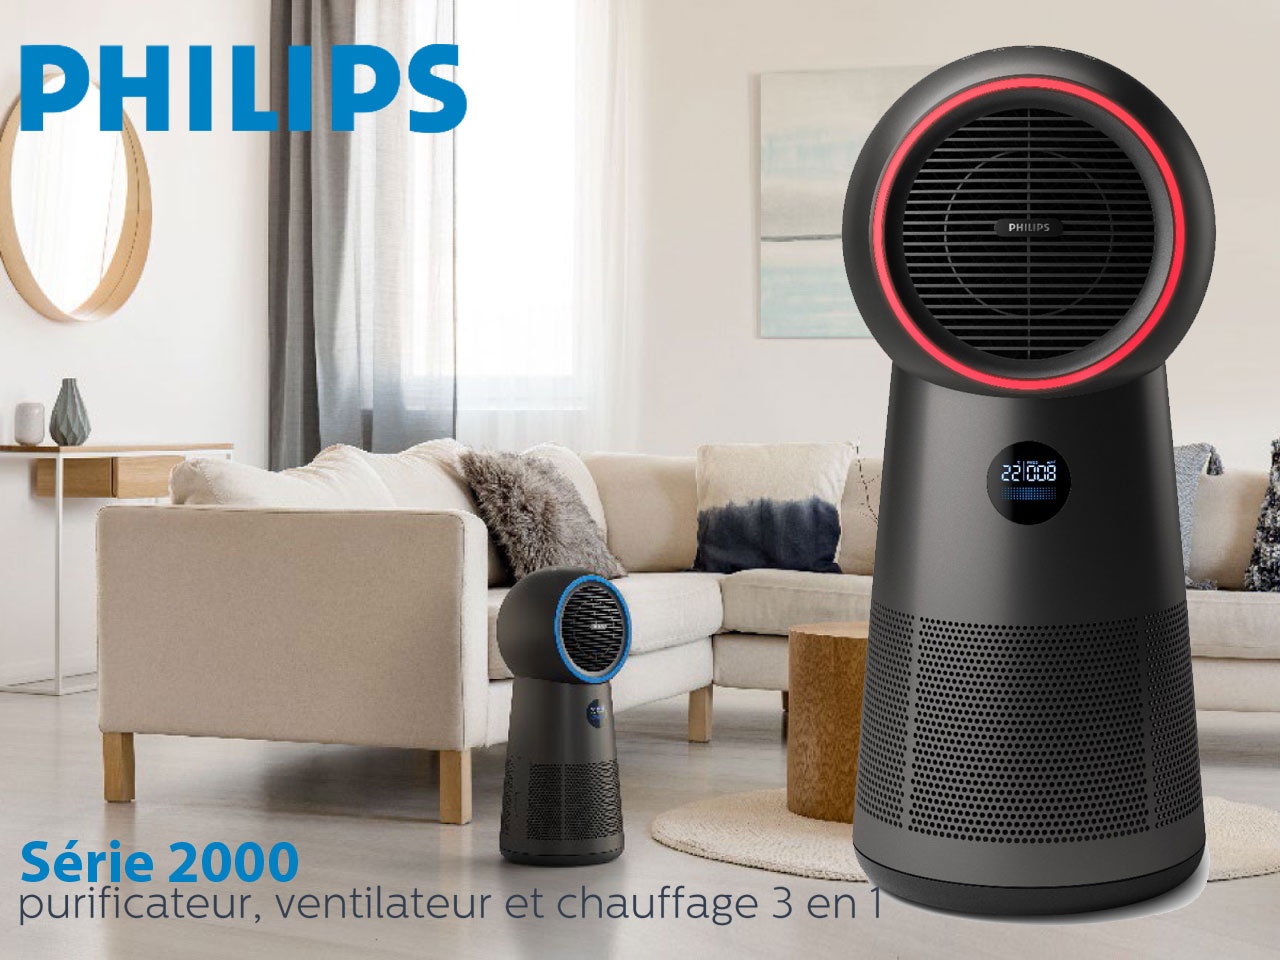 Philips présente un nouveau purificateur d’air Série 2000 3 en 1 (venitlateur et chauffage)